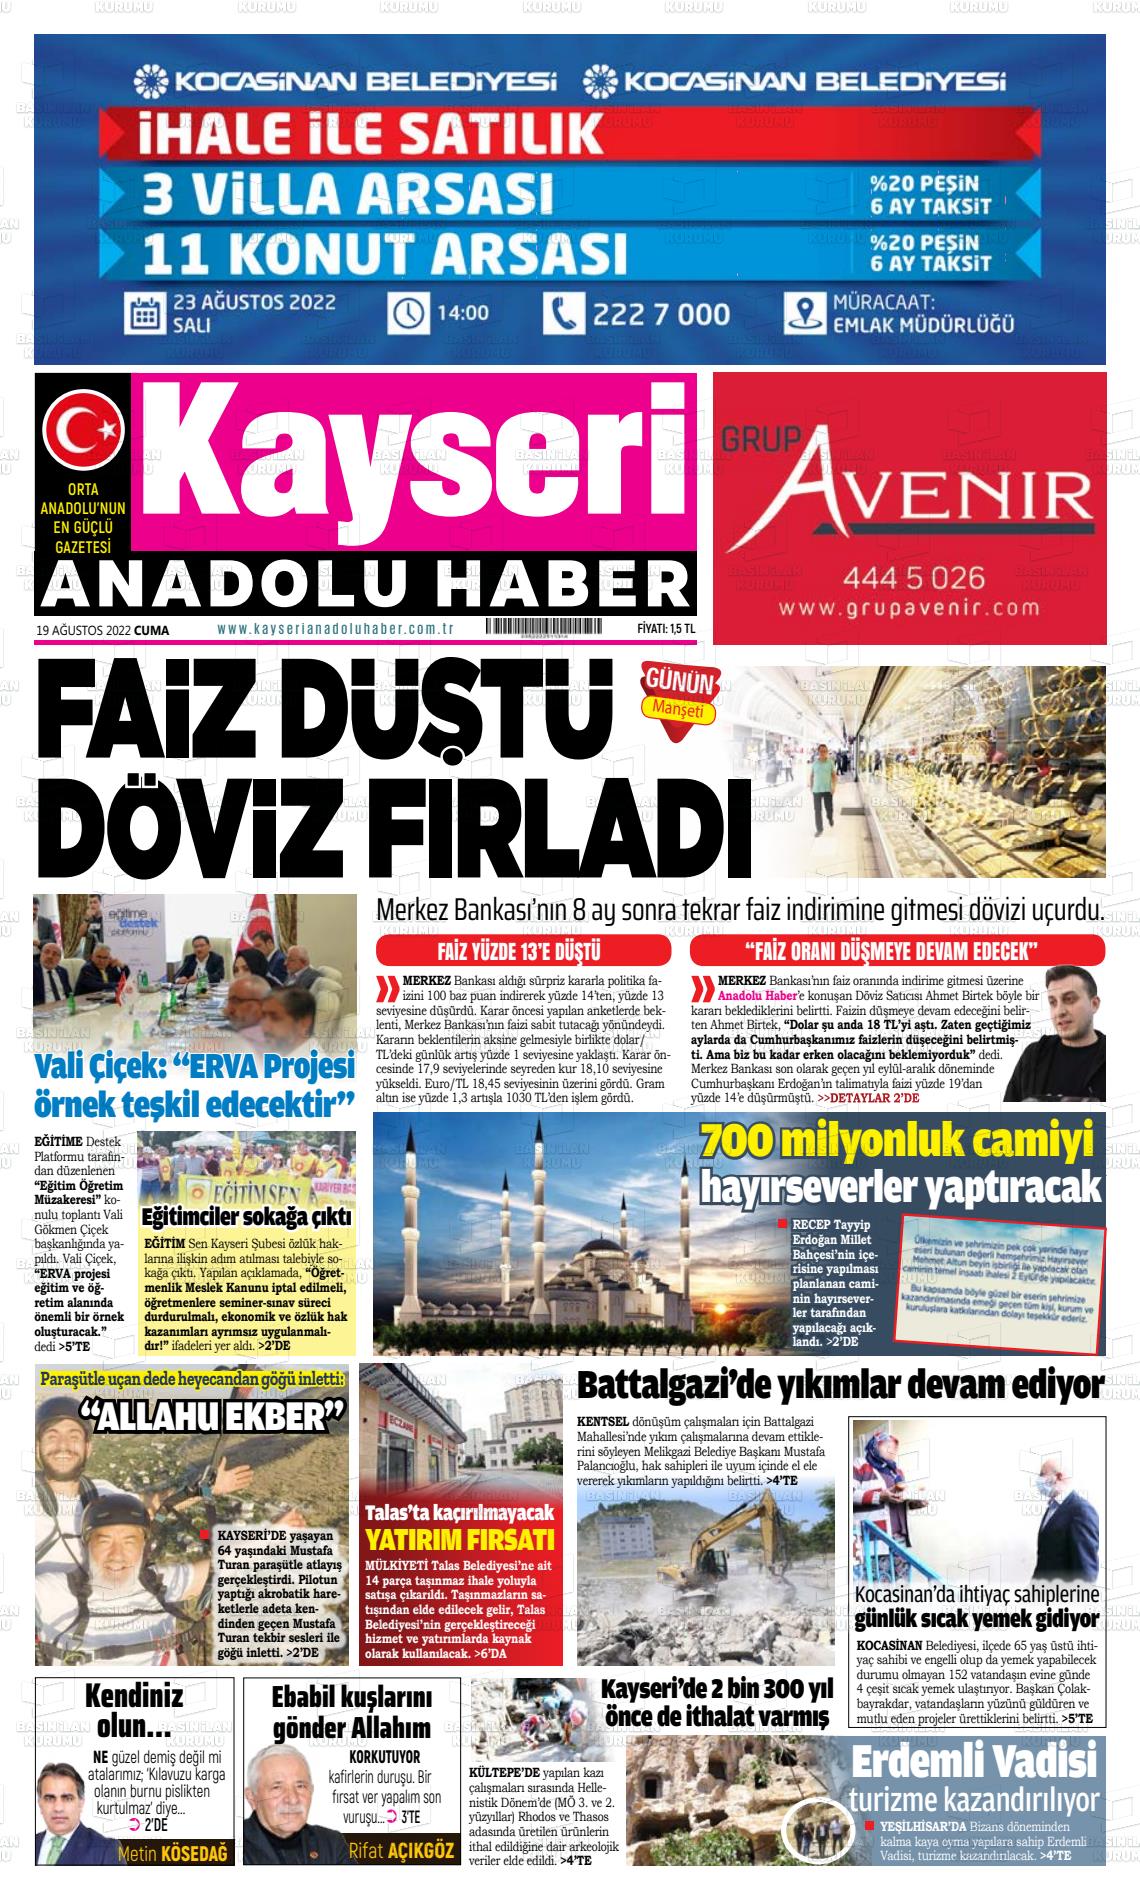 Kayseri Anadolu Haber Gazete Manşeti